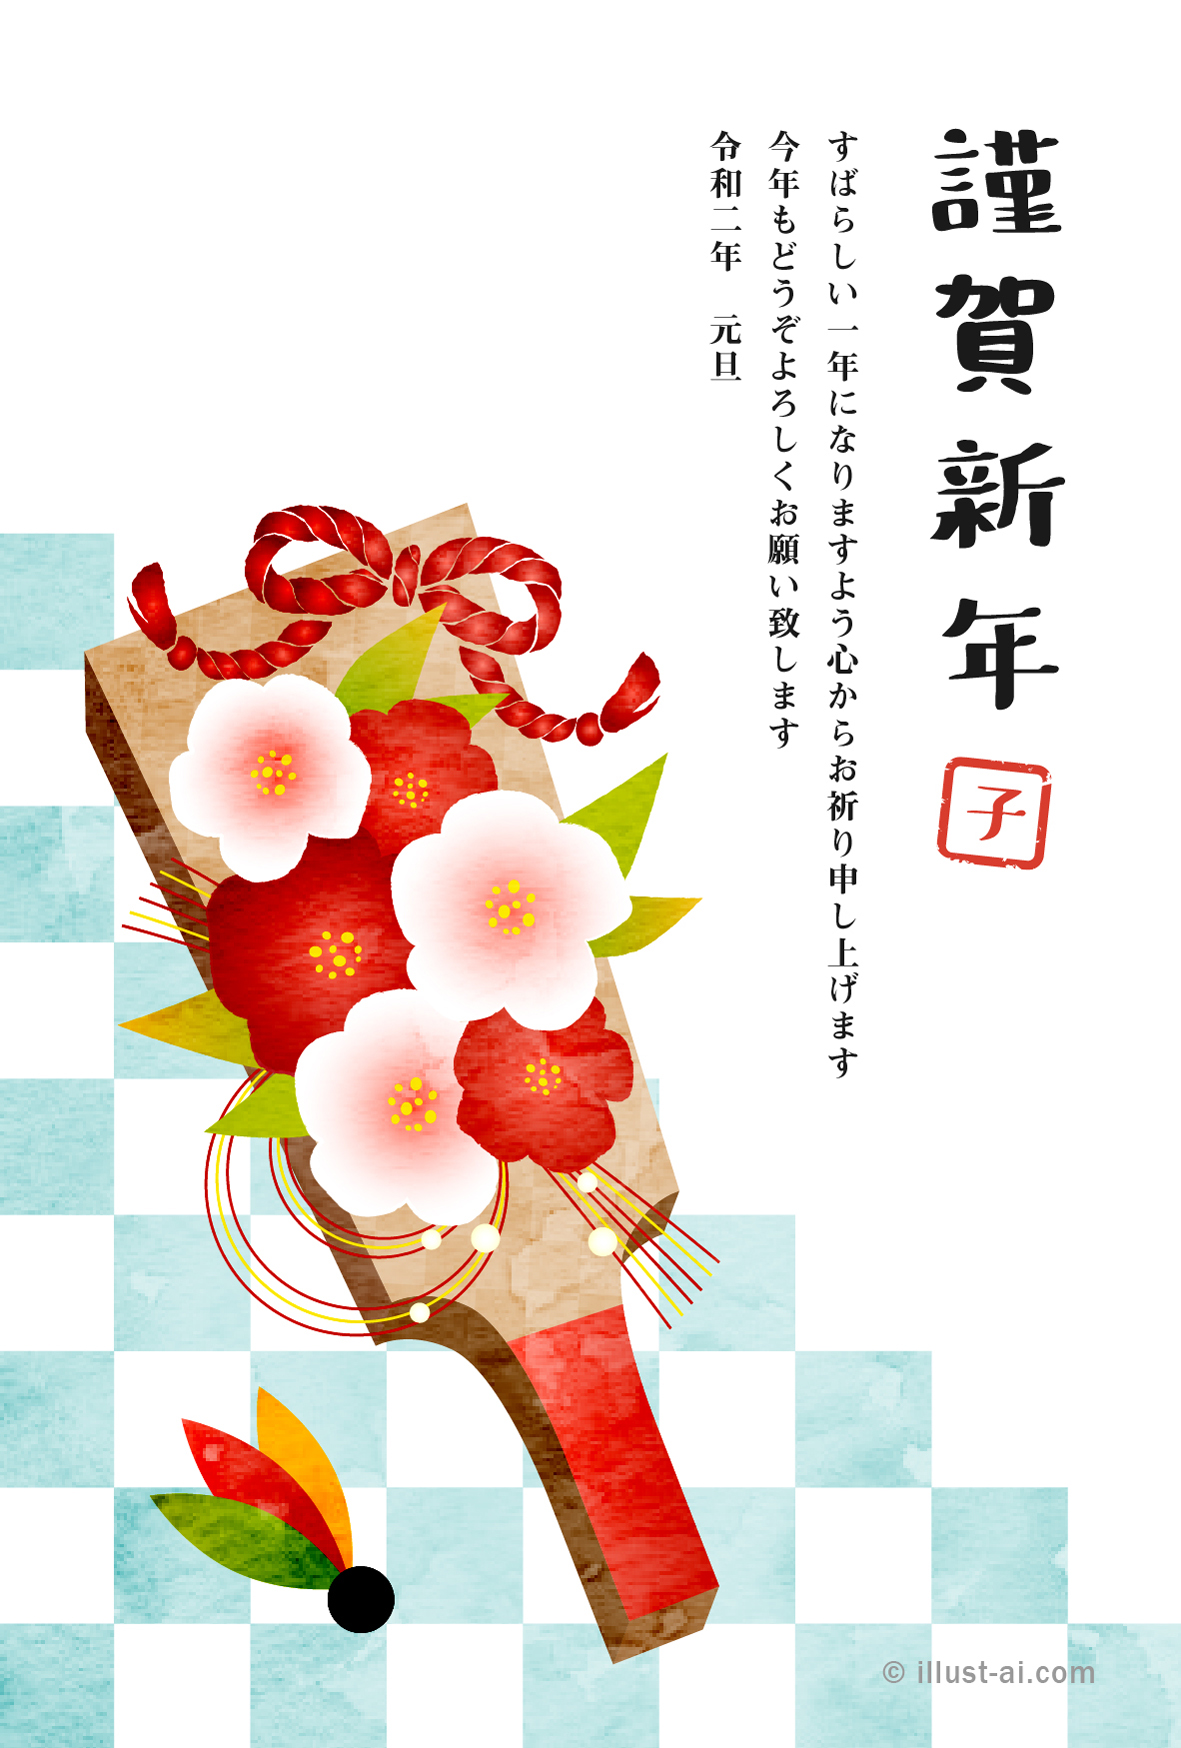 年賀状 子年 椿の花飾り羽子板とさわやかな水色の市松模様 年賀状無料イラスト素材集